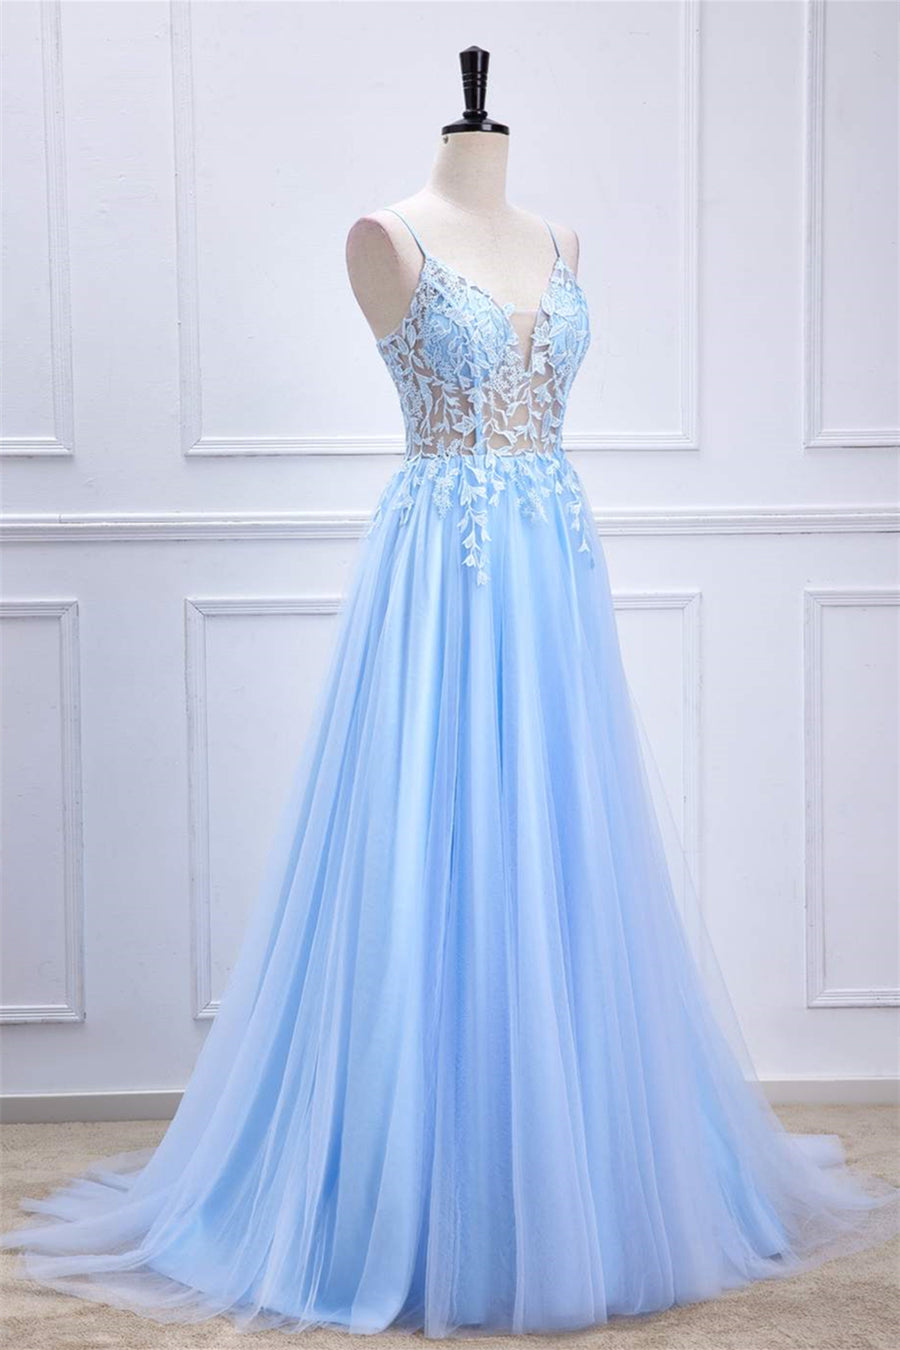 Light Blue Lace-Up Appliques A-line Long Prom Dress